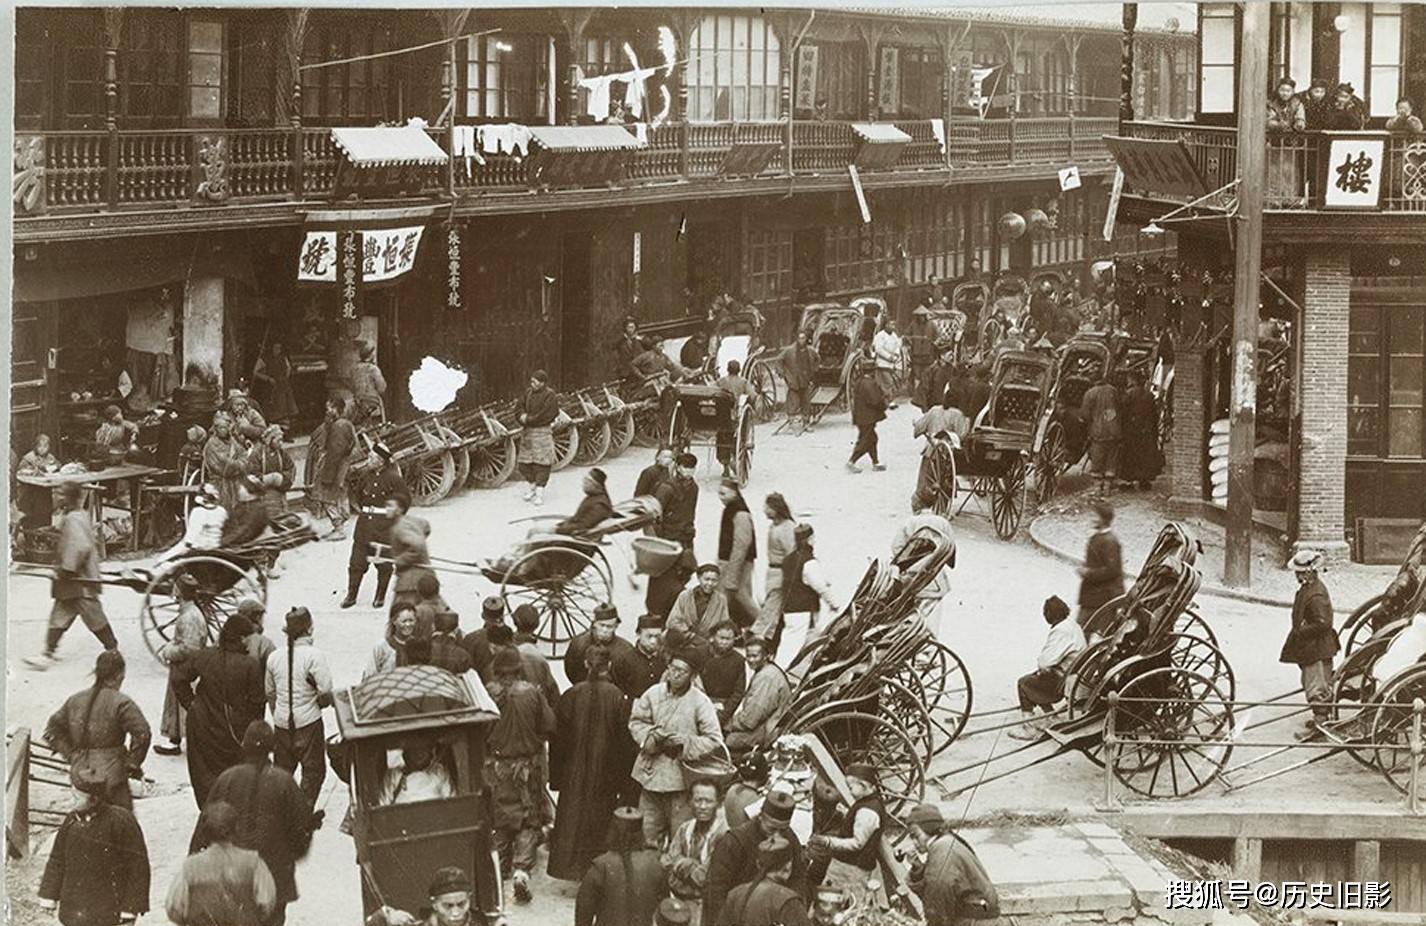 1900年上海建筑及街景老照片,铺设第一条有轨电车